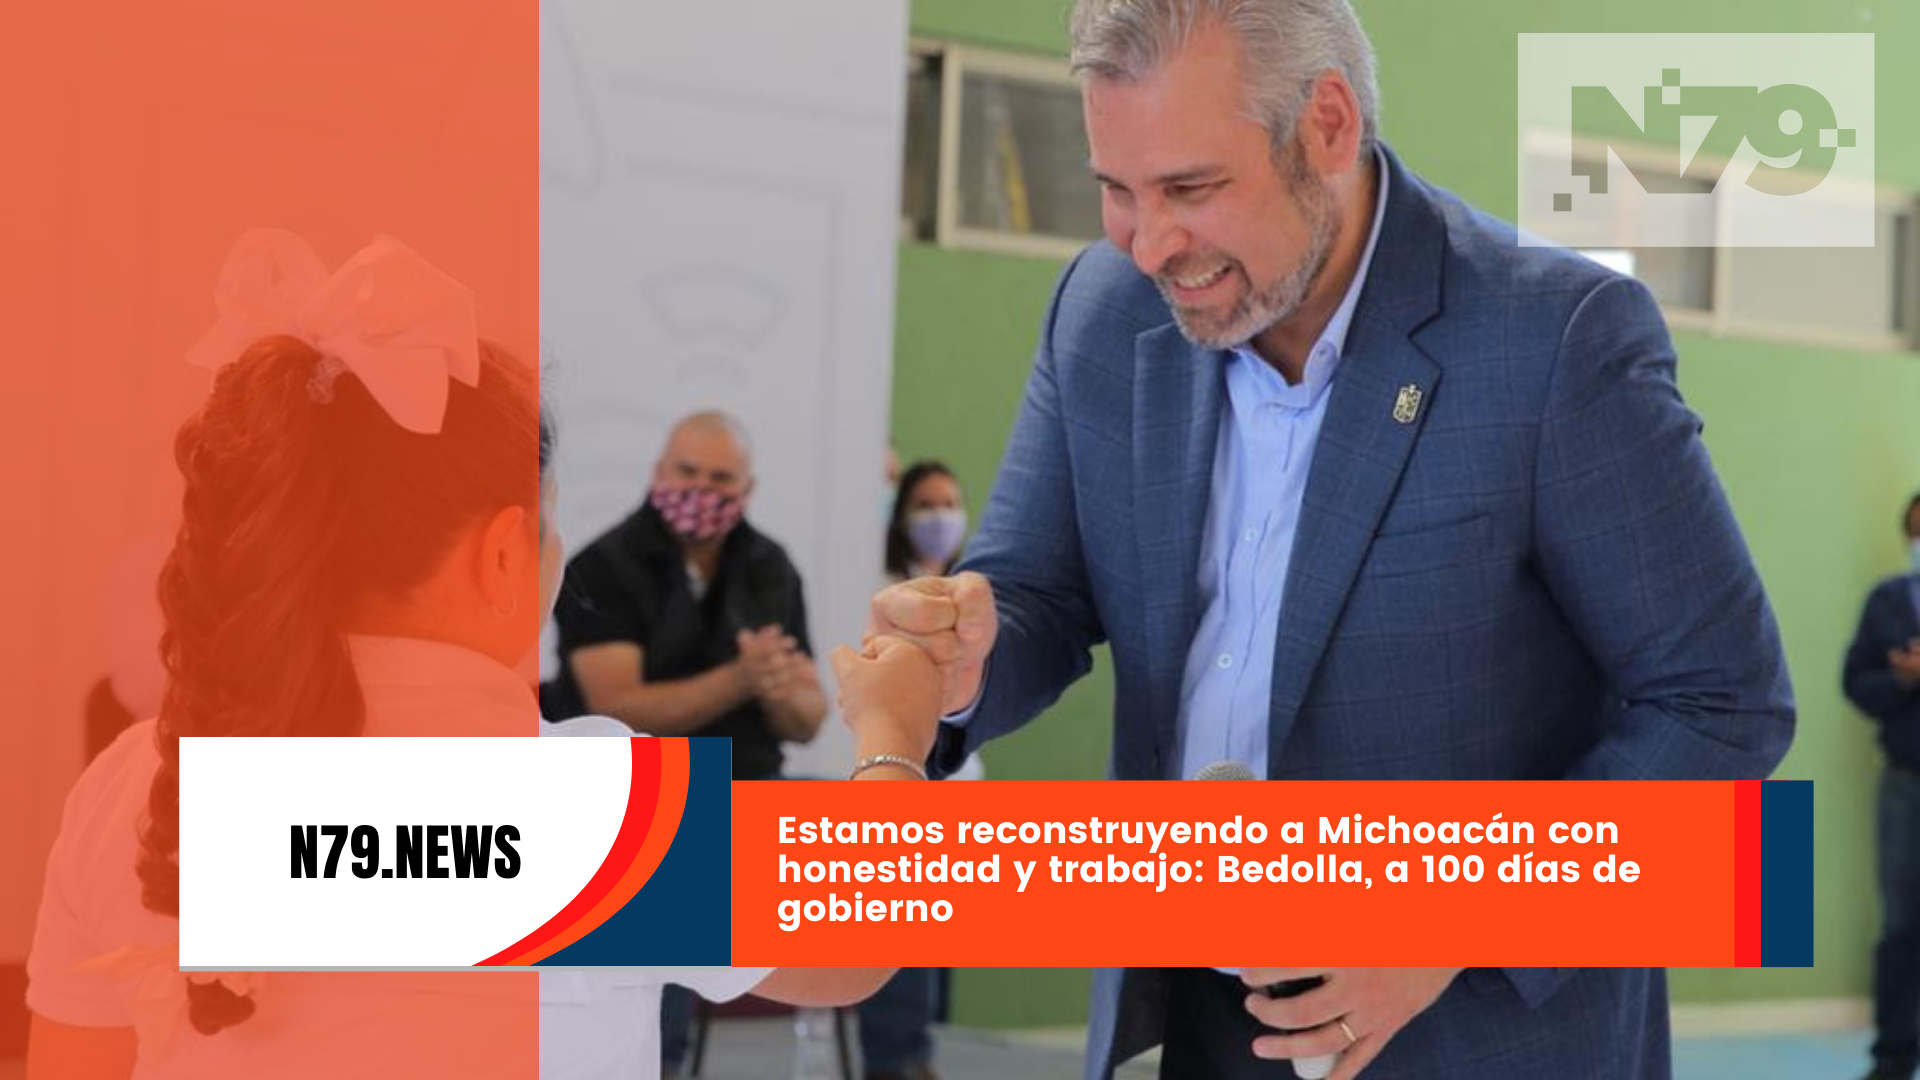 Estamos reconstruyendo a Michoacán con honestidad y trabajo Bedolla, a 100 días de gobierno